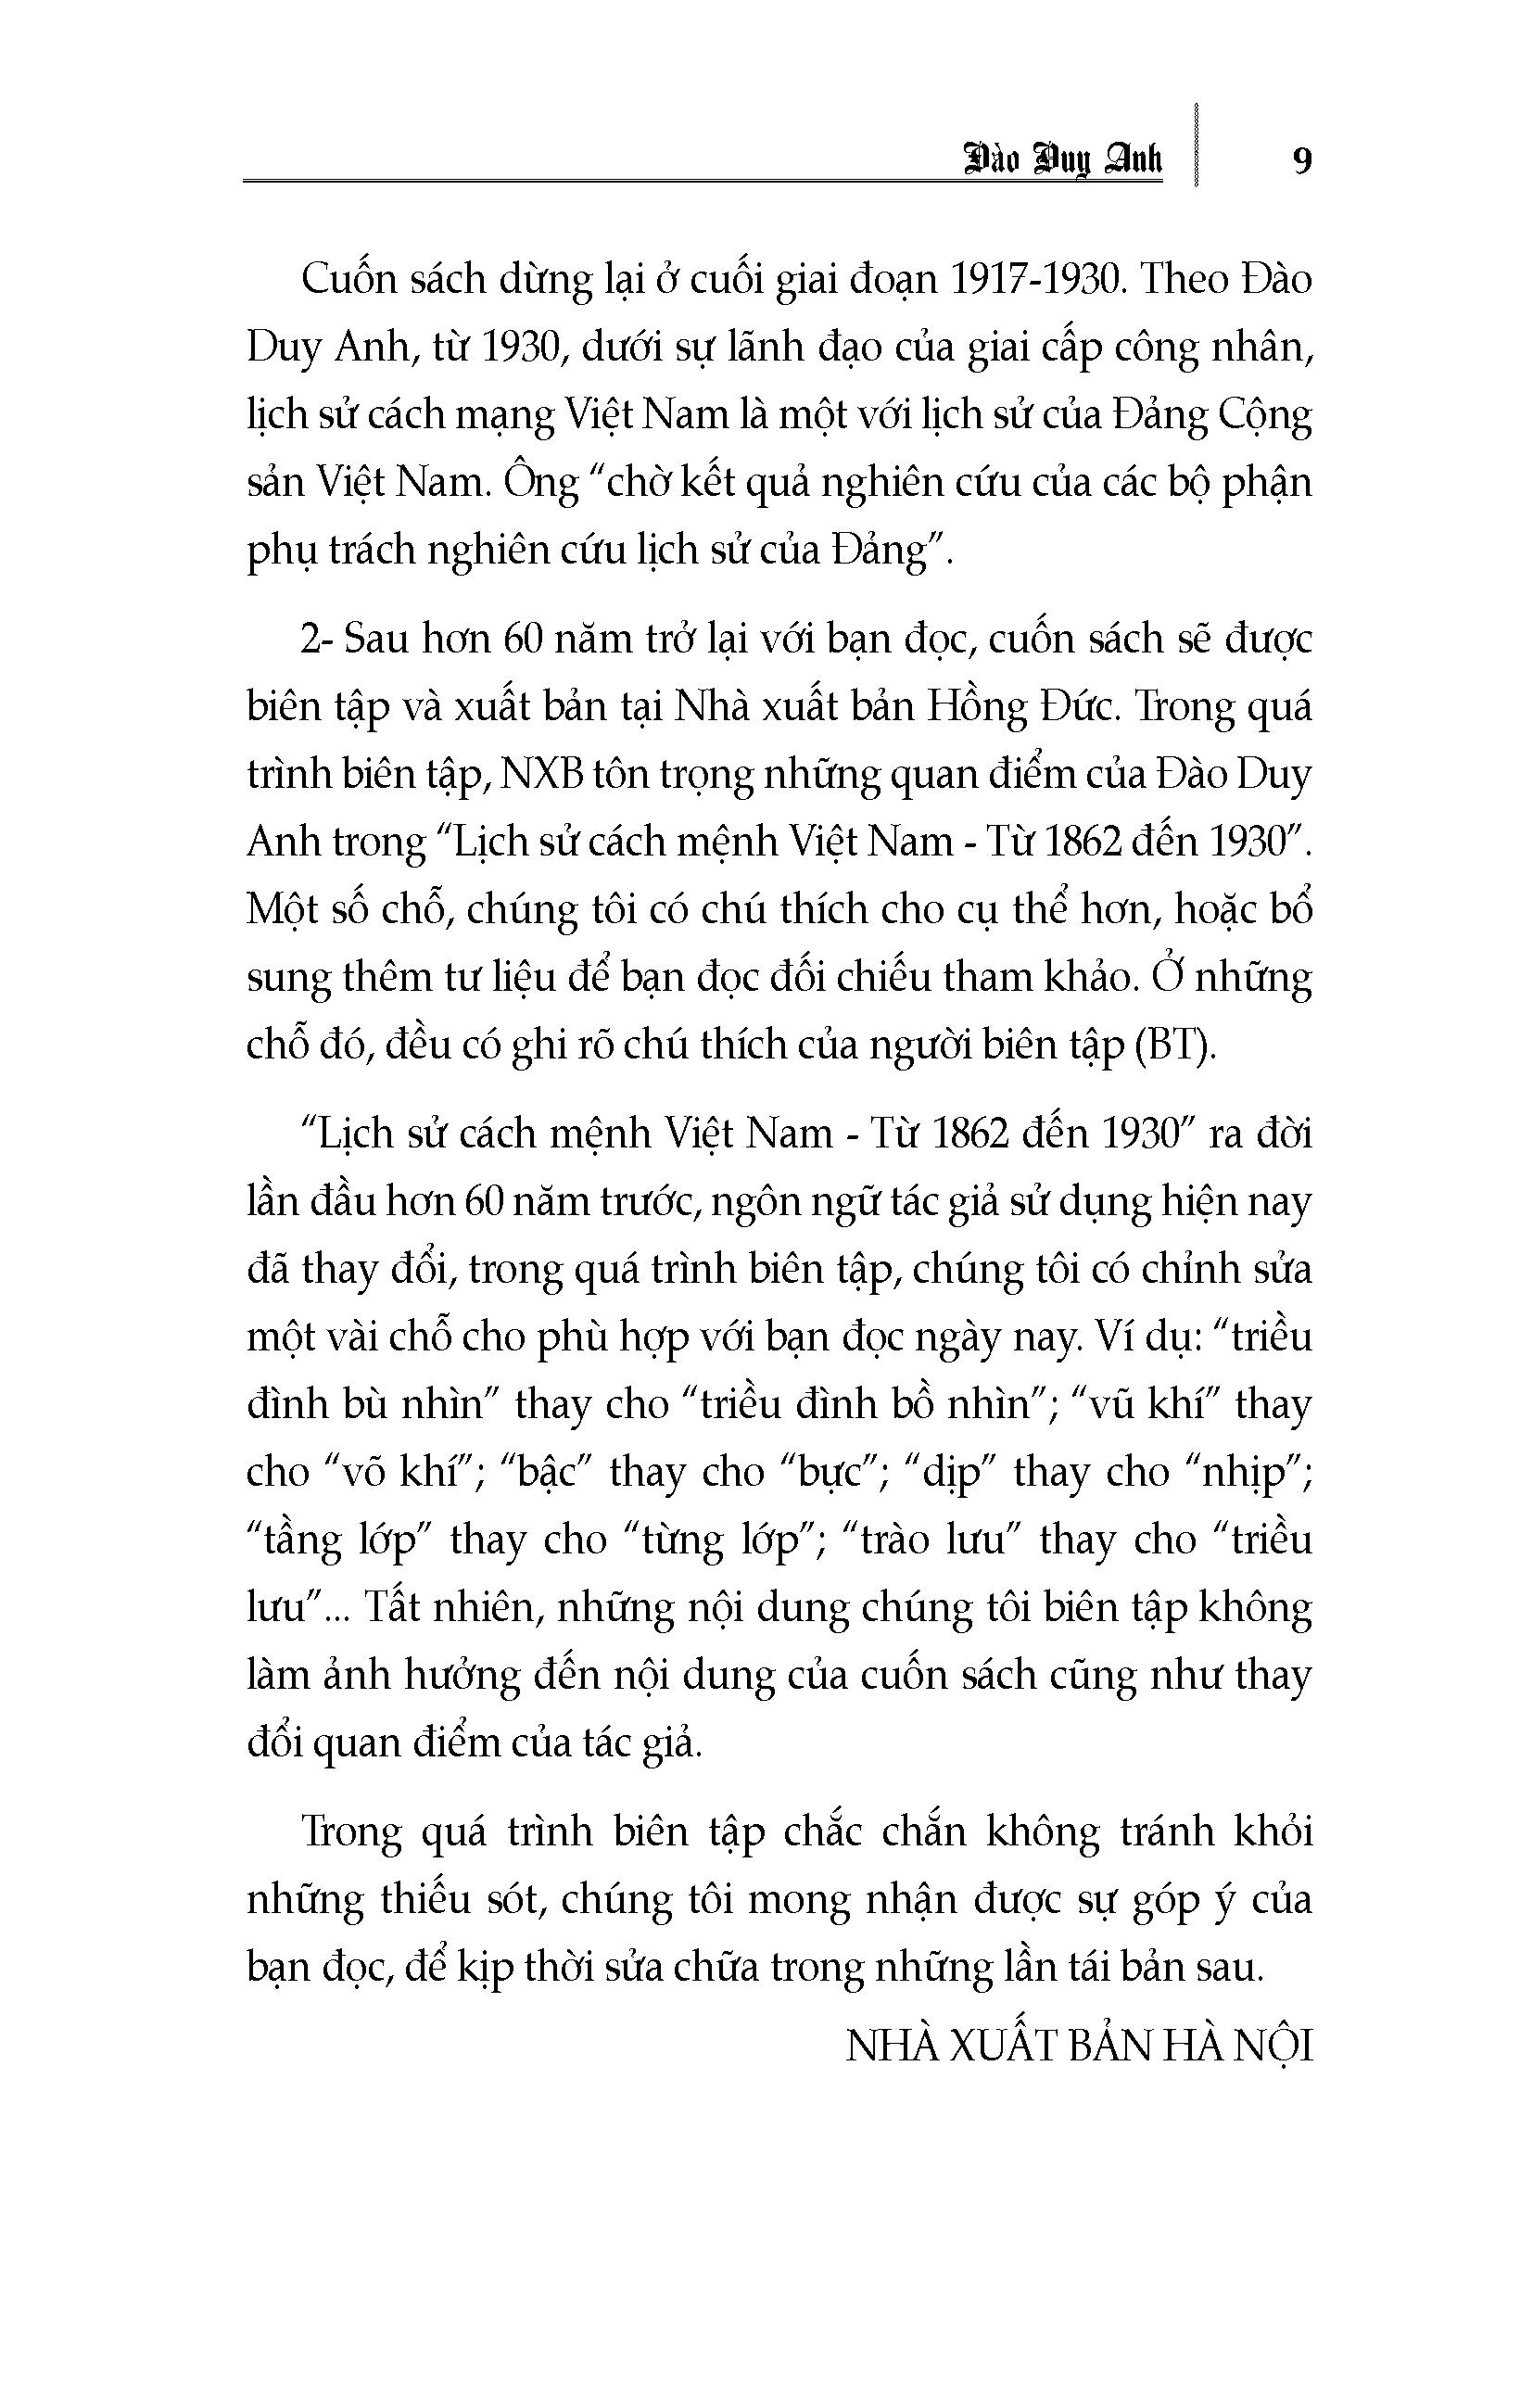 Lịch Sử Cách Mệnh Việt Nam Từ 1862 Đến 1930